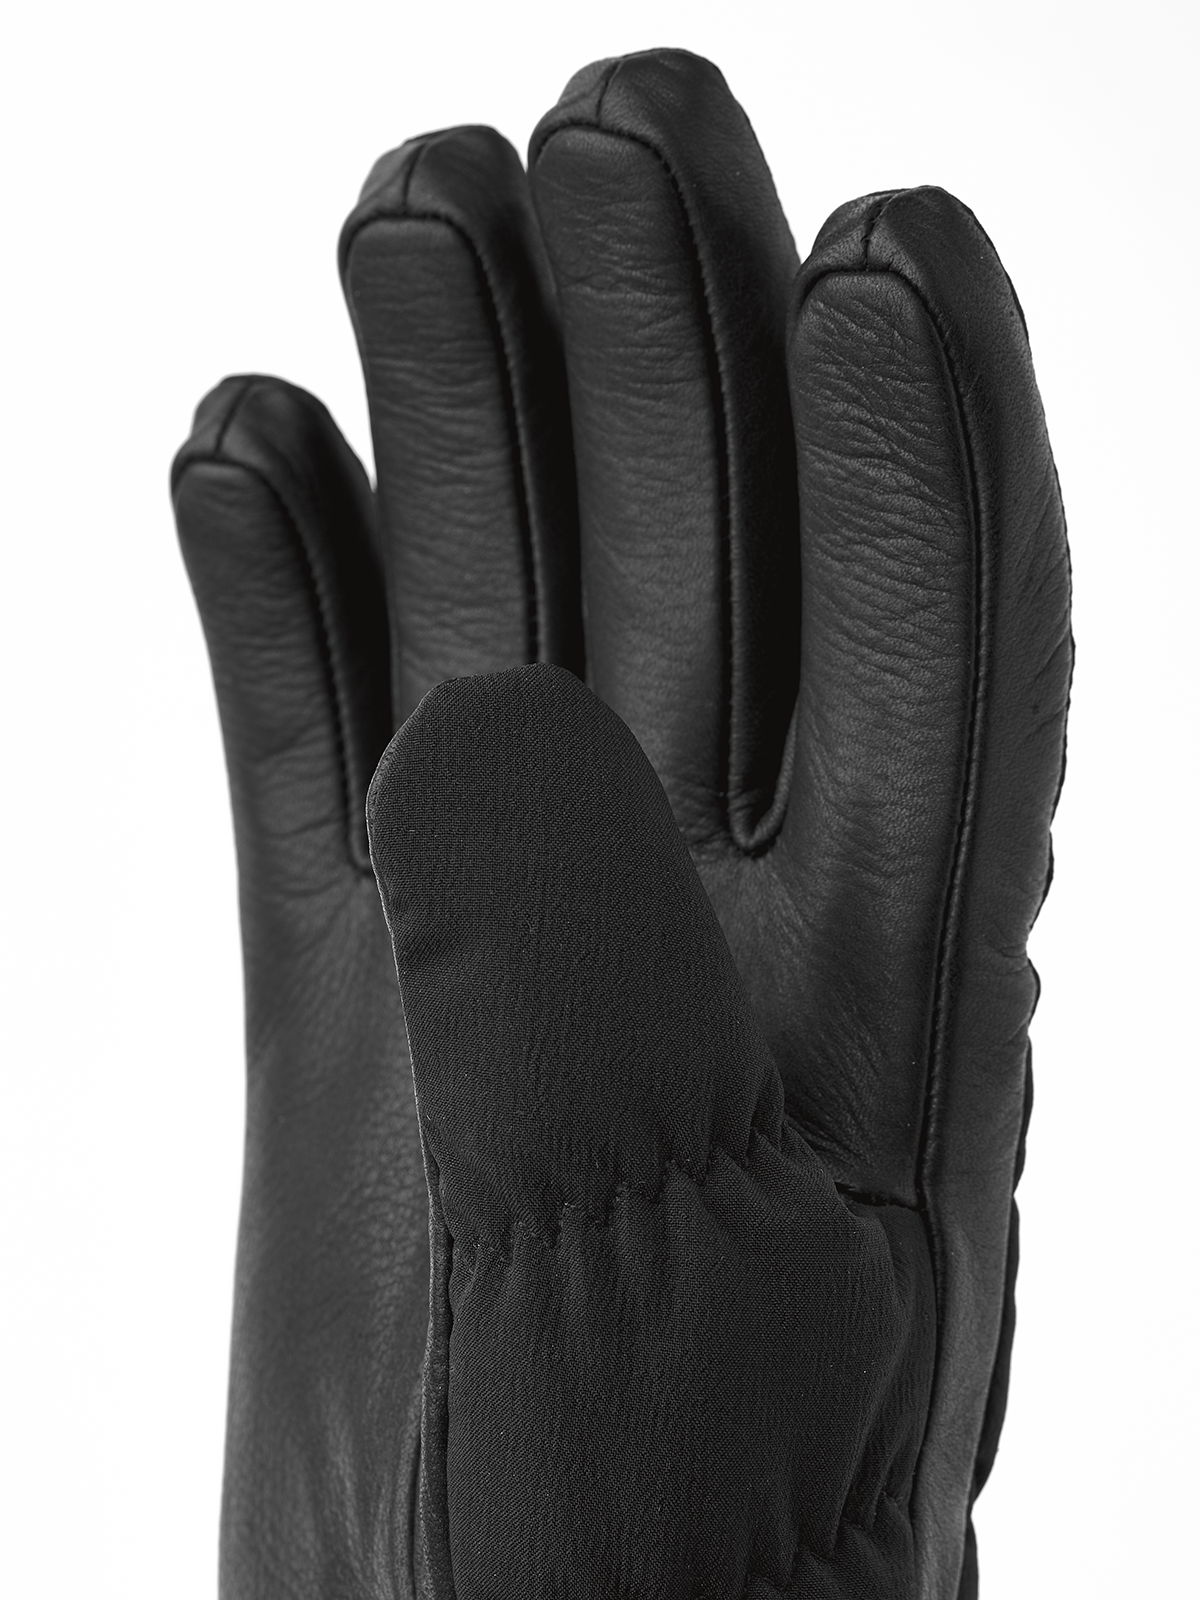 Luomi Czone Female 5-finger - Black | Hestra Gloves